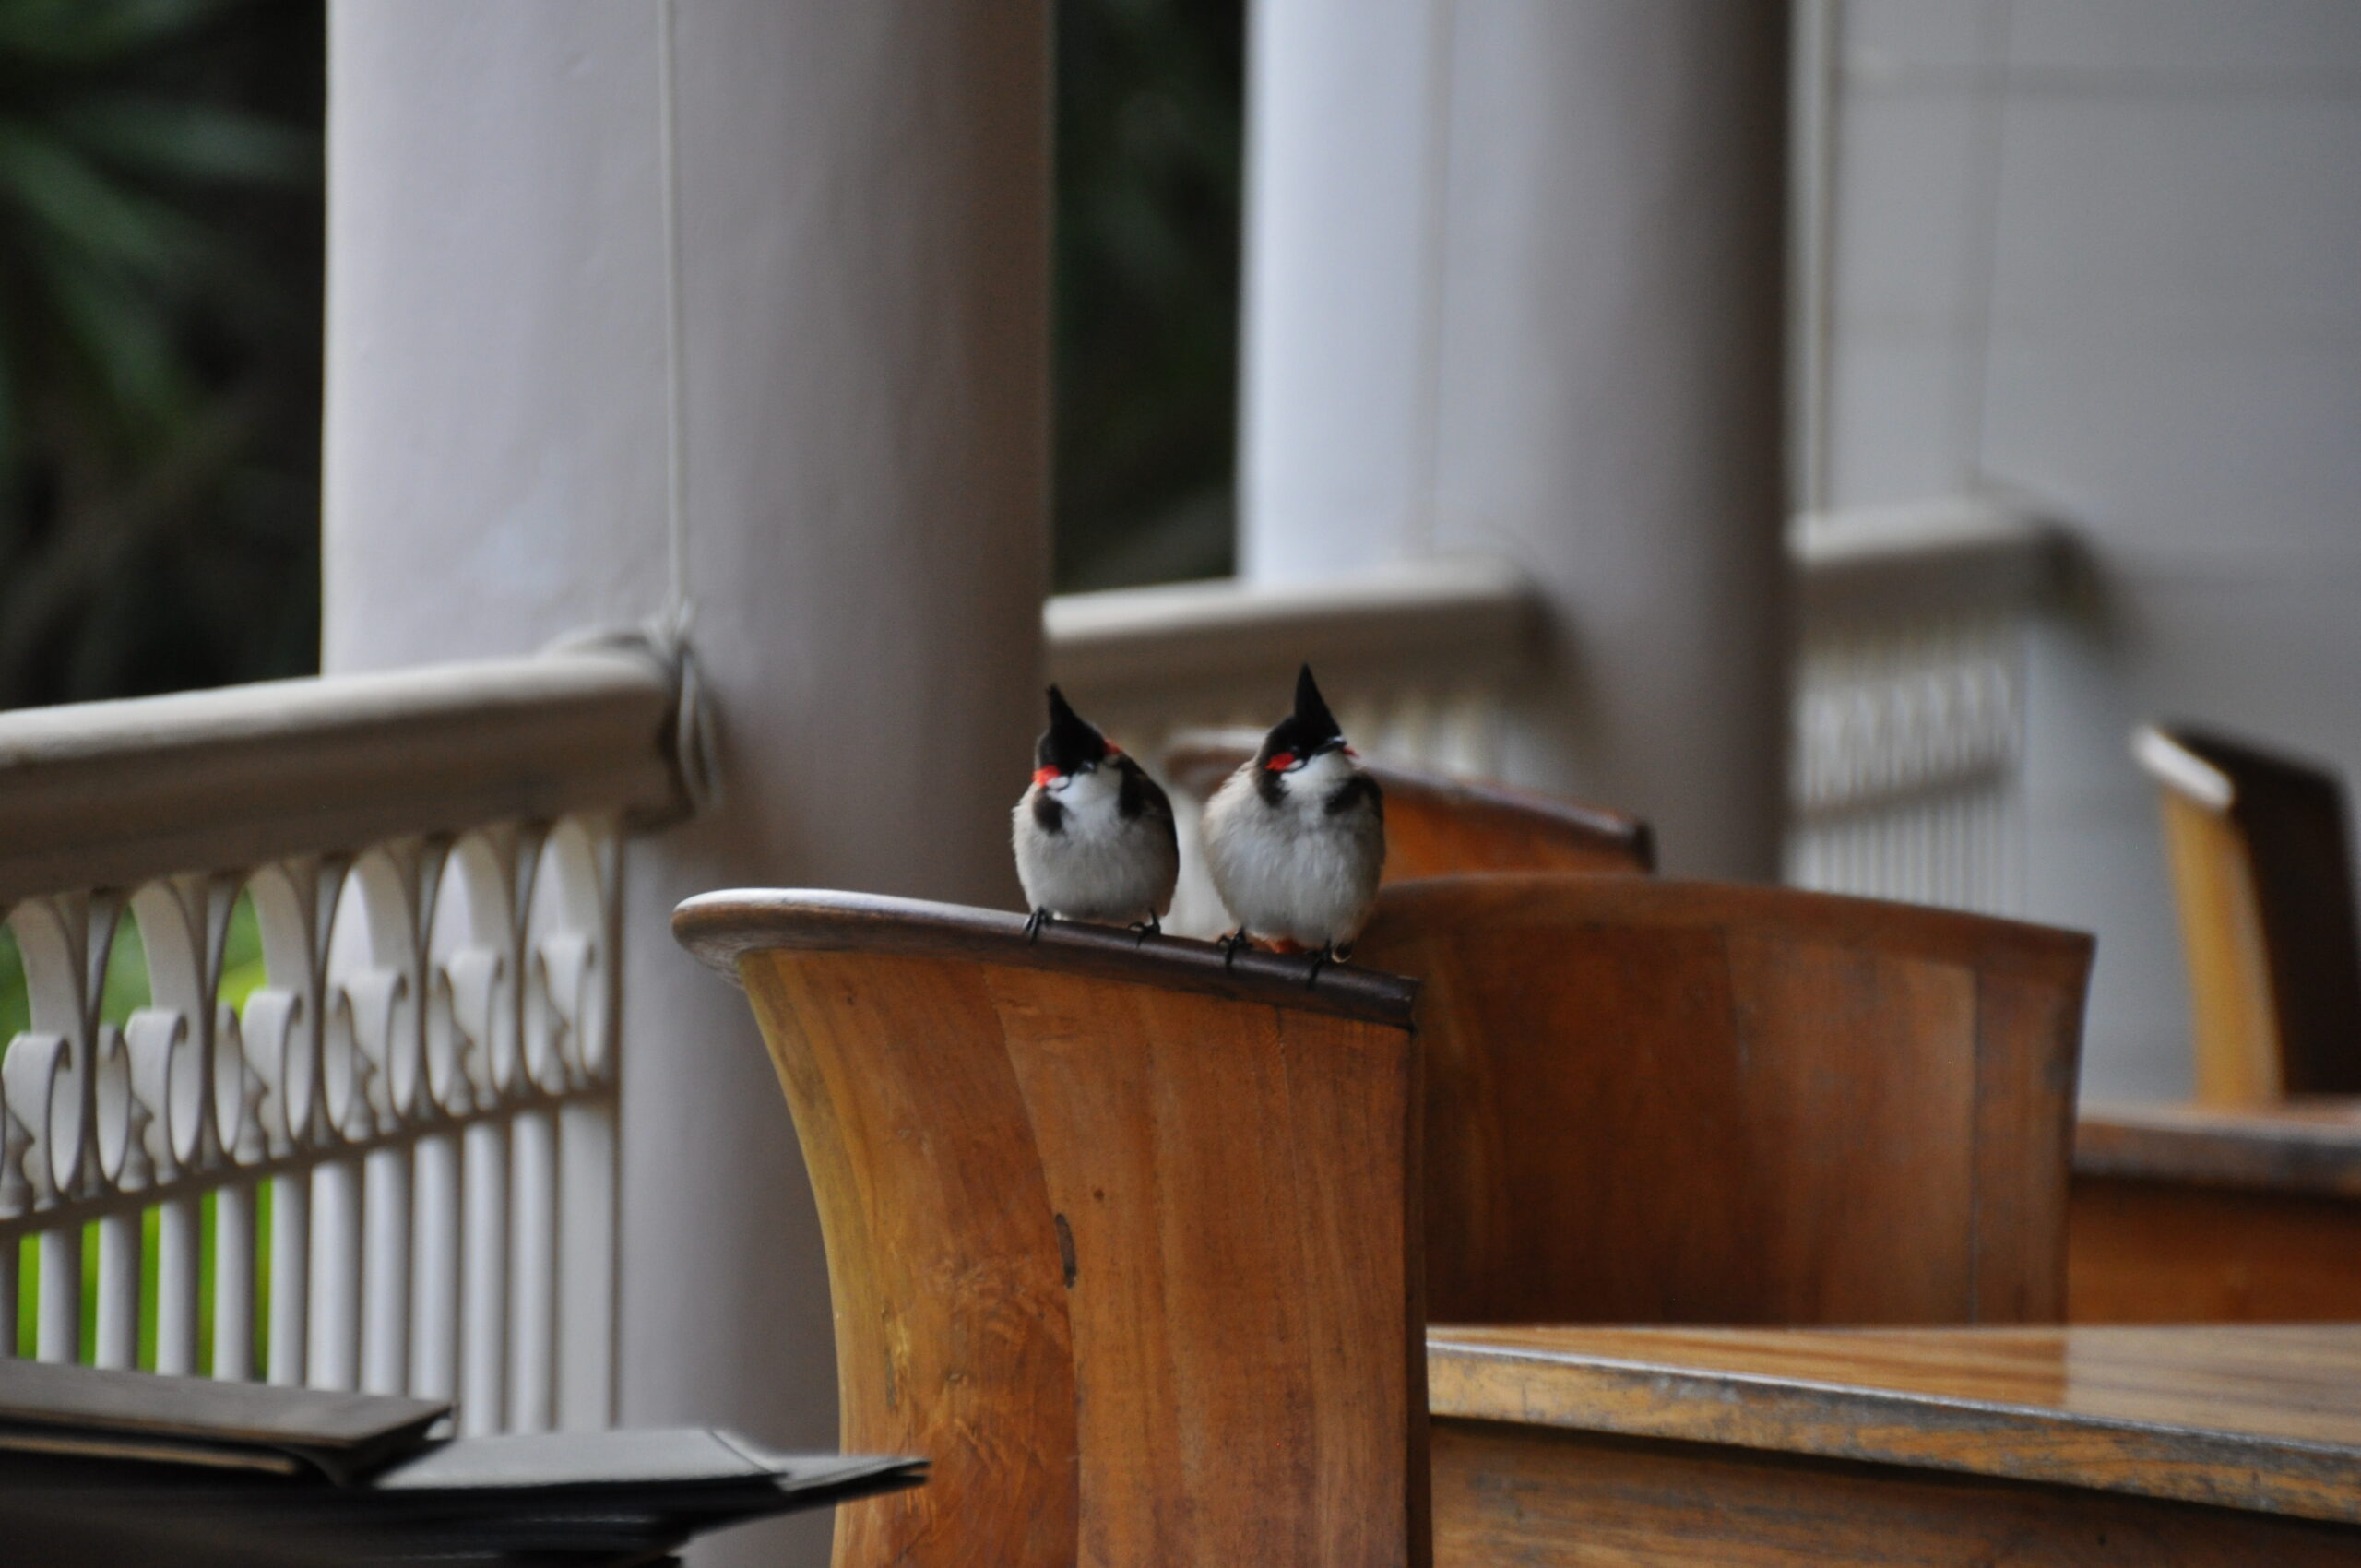 Vögel warten auf Krümel vom Essen